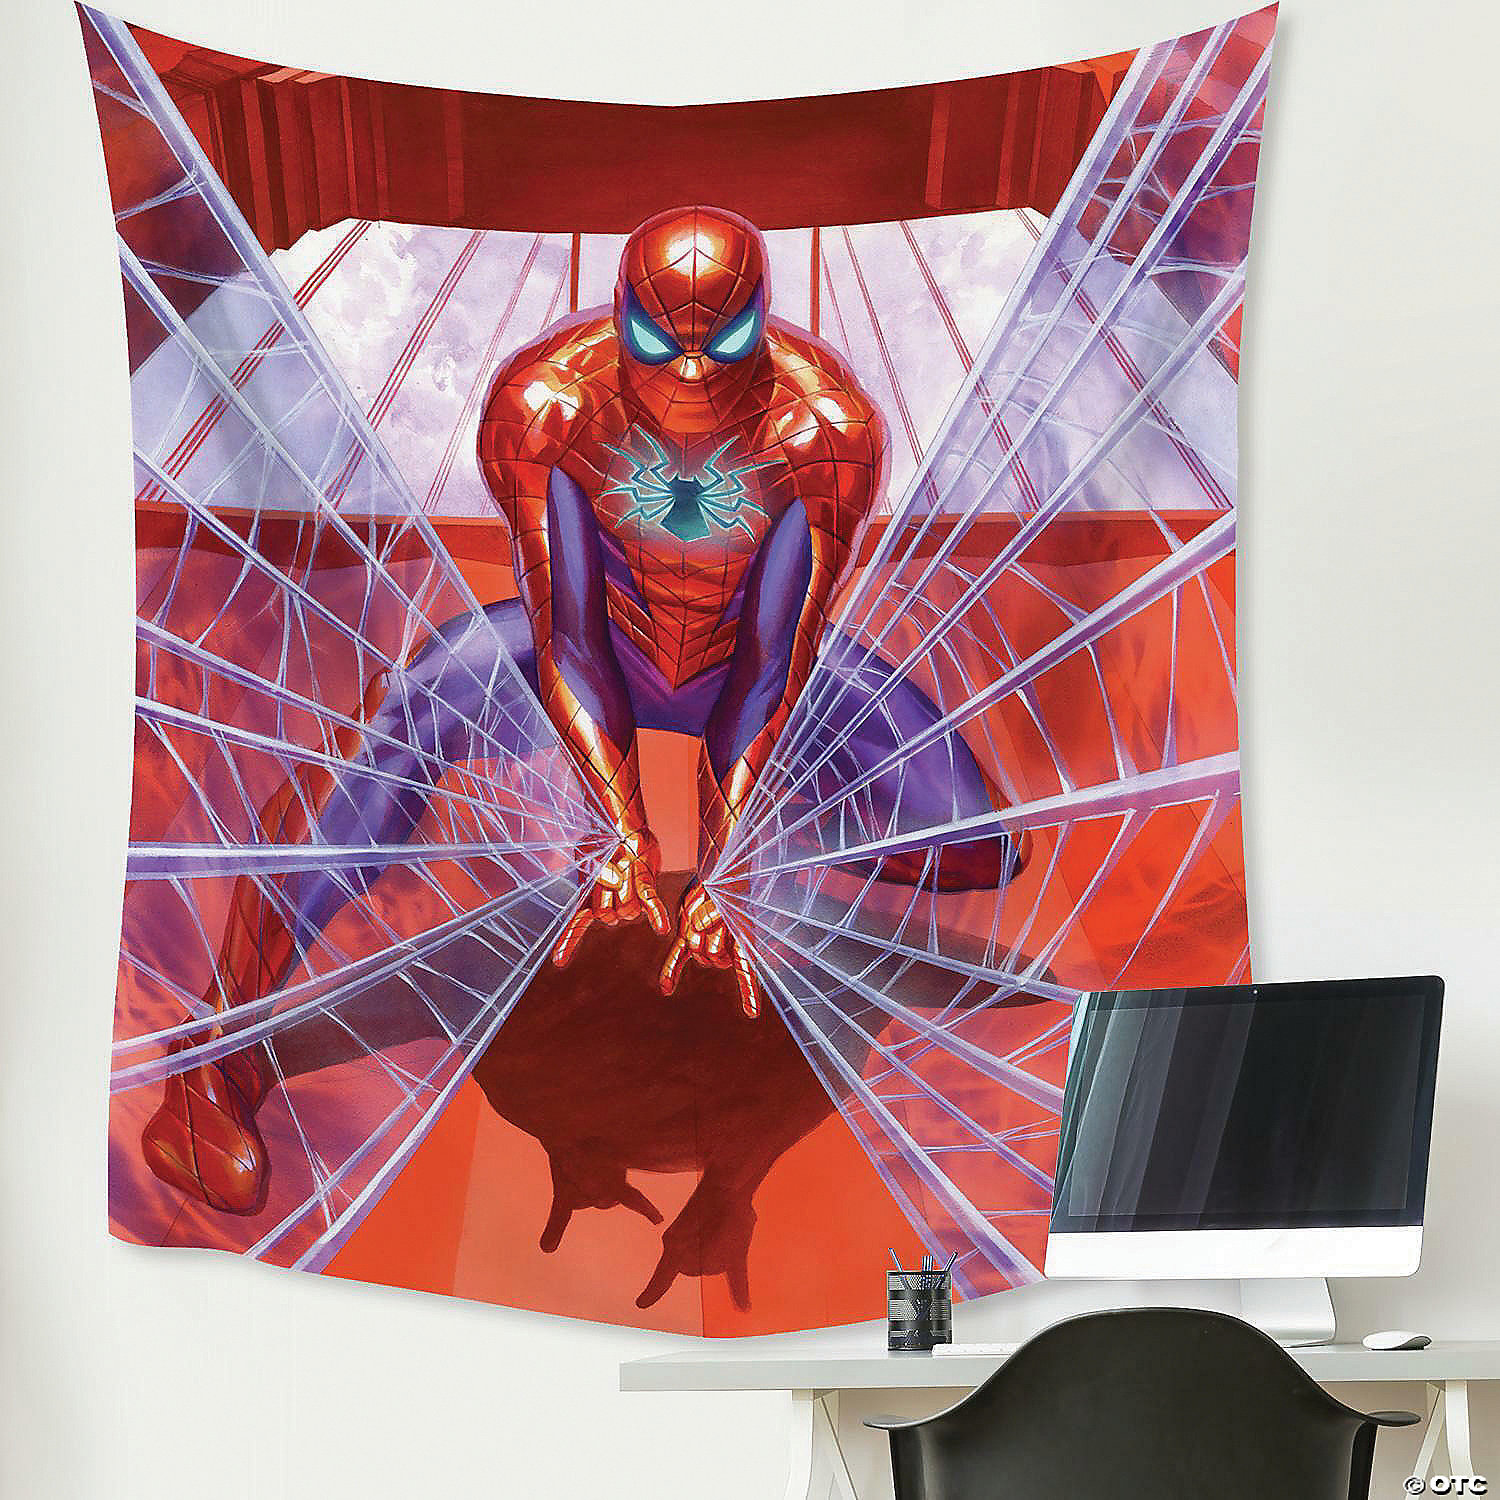 RoomMates Marvel Alex Ross Spiderman Tapestry